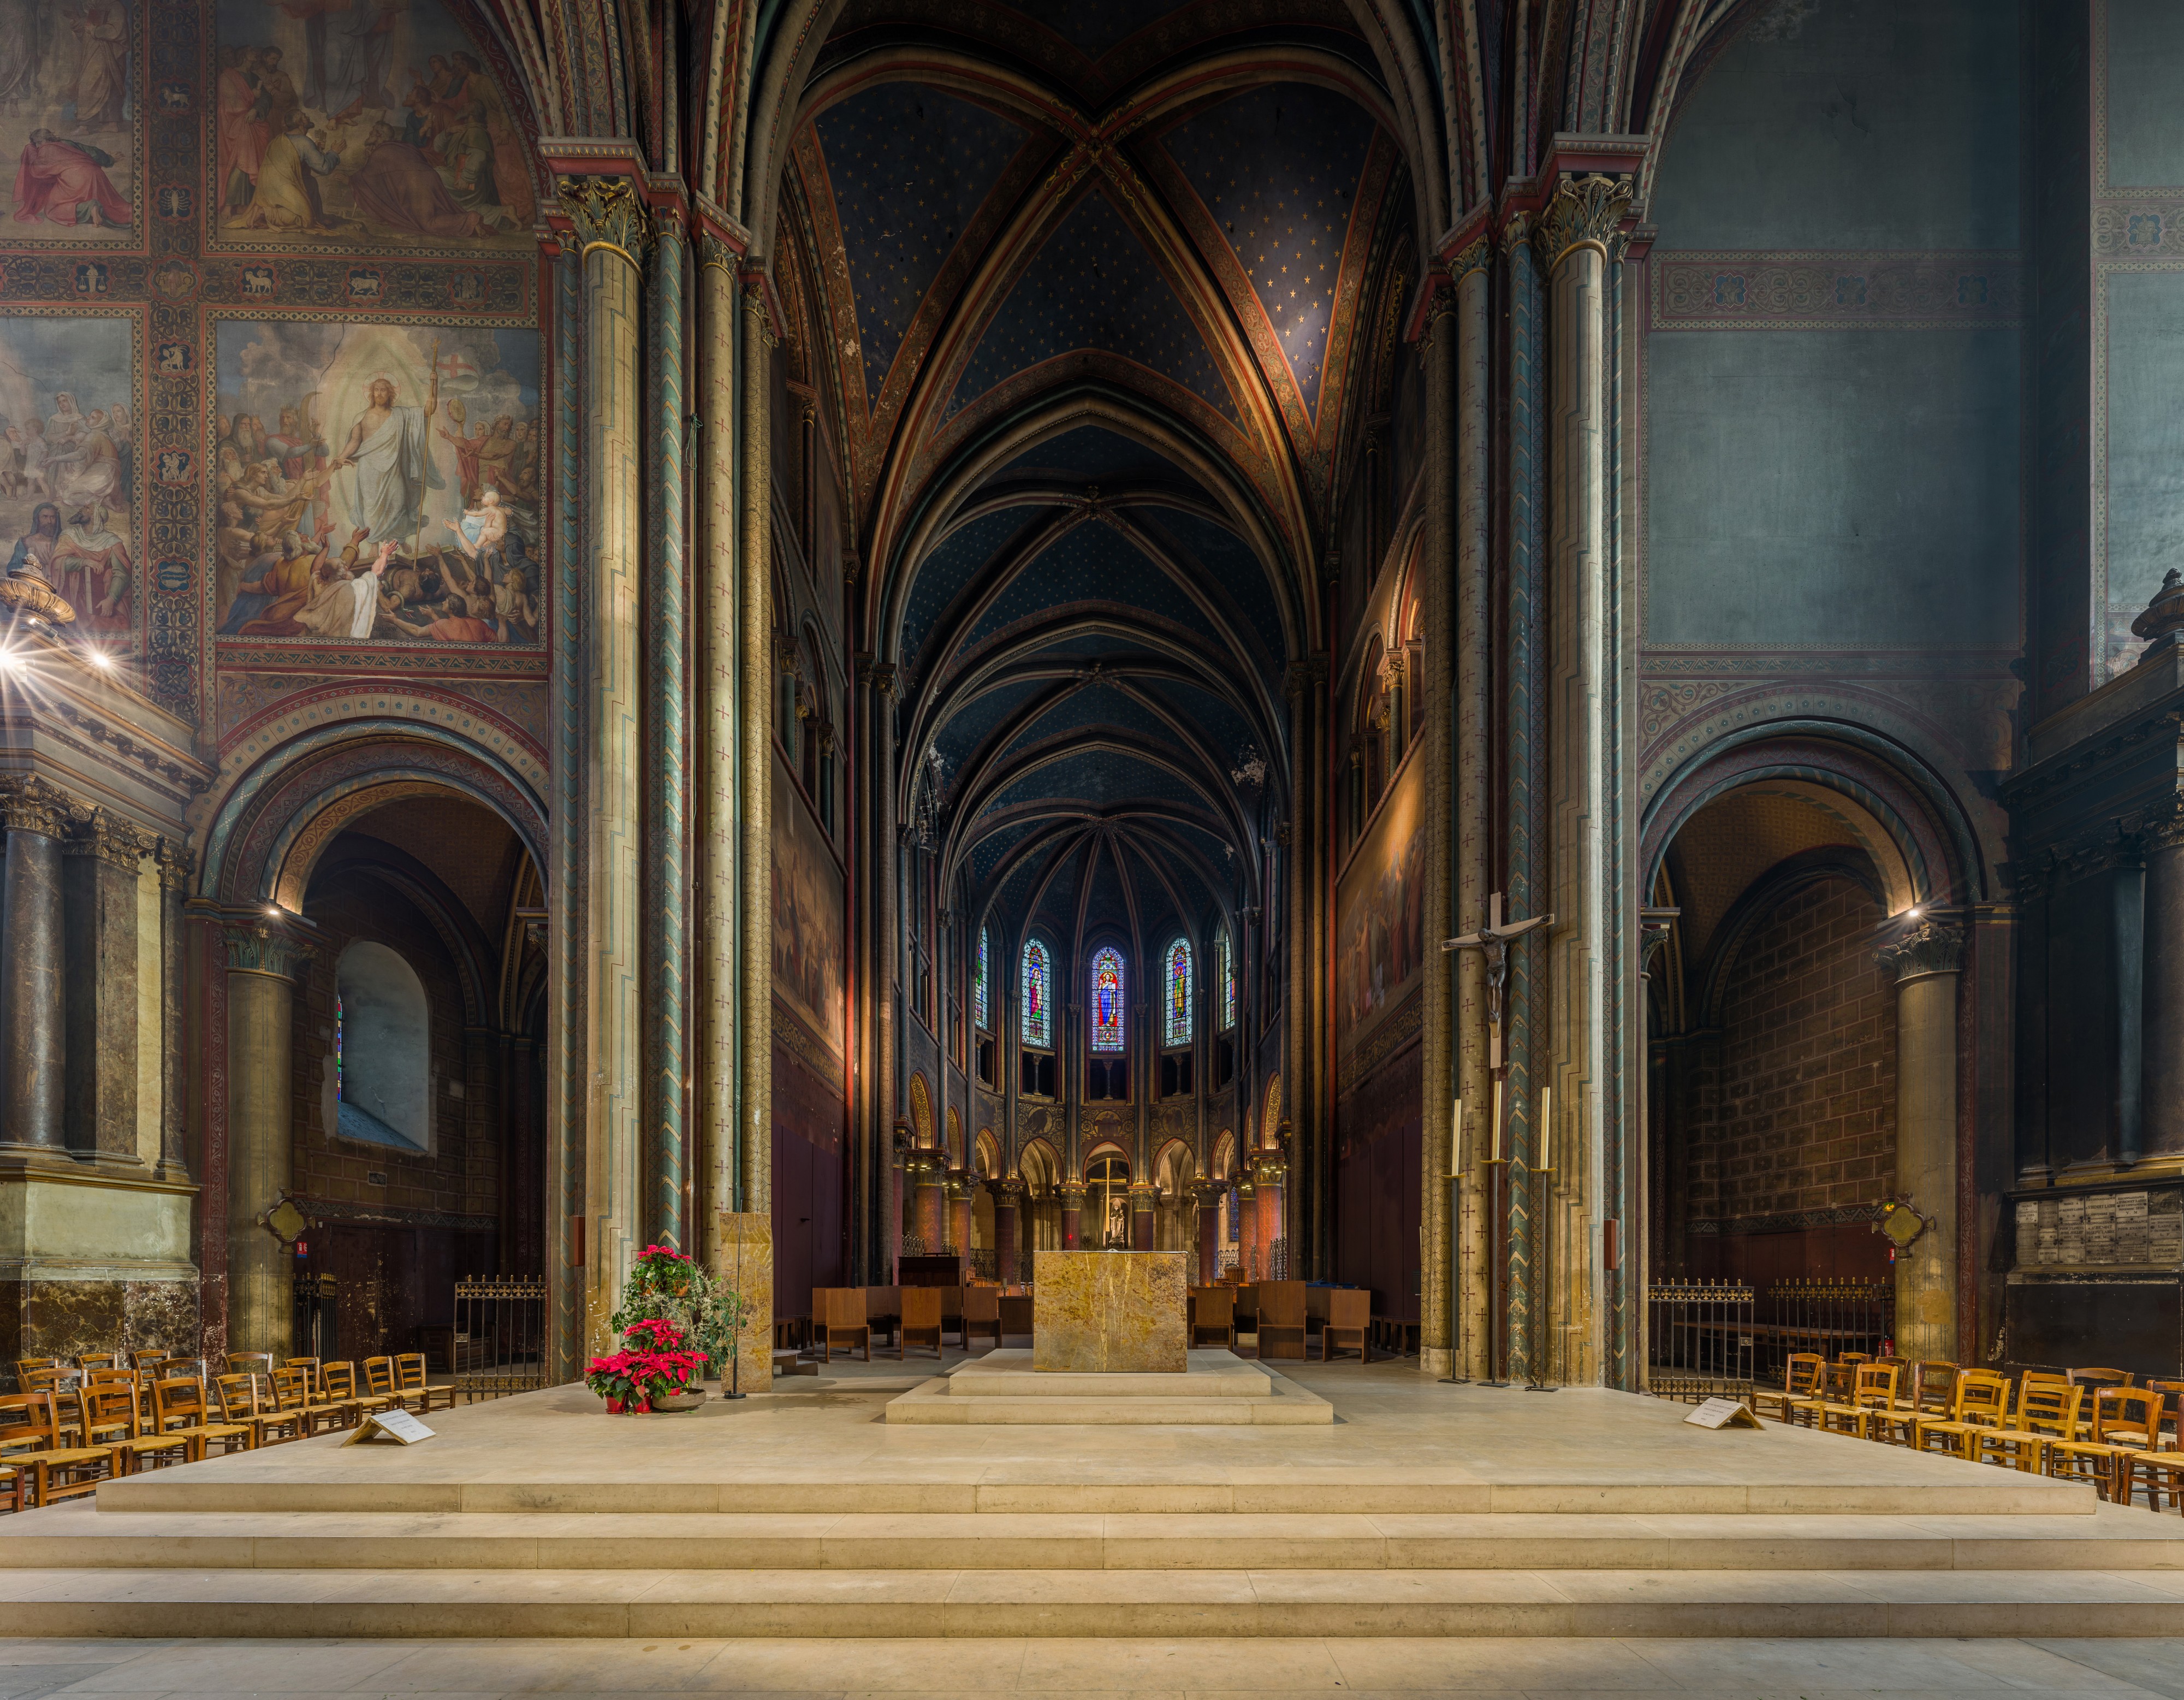 Sanctuary of Abbaye de Saint-Germain-des-Prés, Paris, France - Diliff